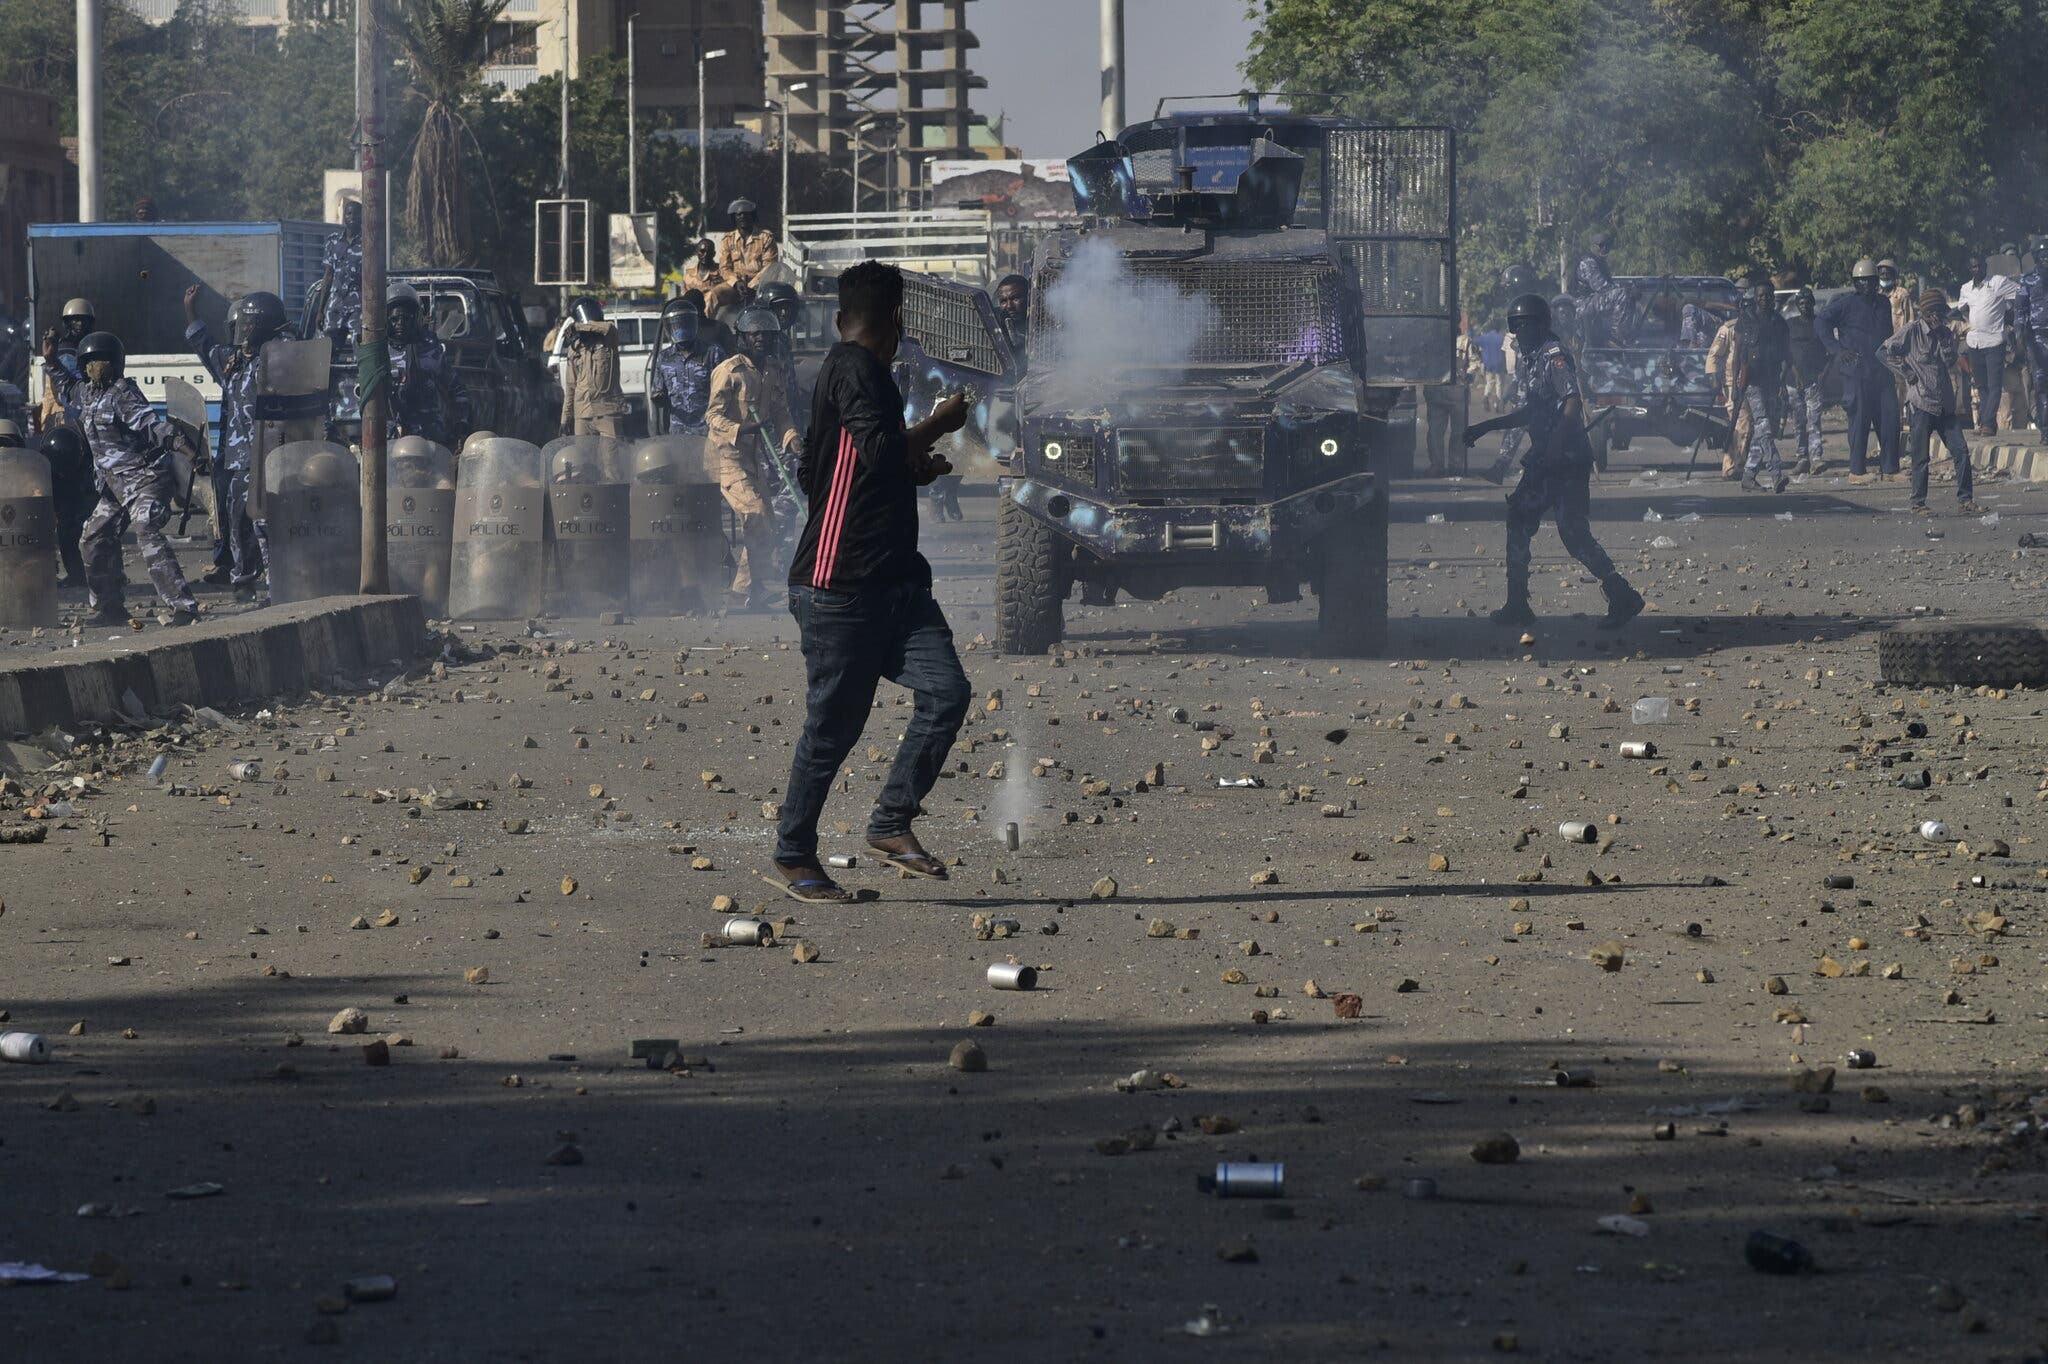 استخدمت قوات الأمن في الخرطوم الغاز المسيل للدموع - وأحيانًا الرصاص - في محاولة لوقف المظاهرات.